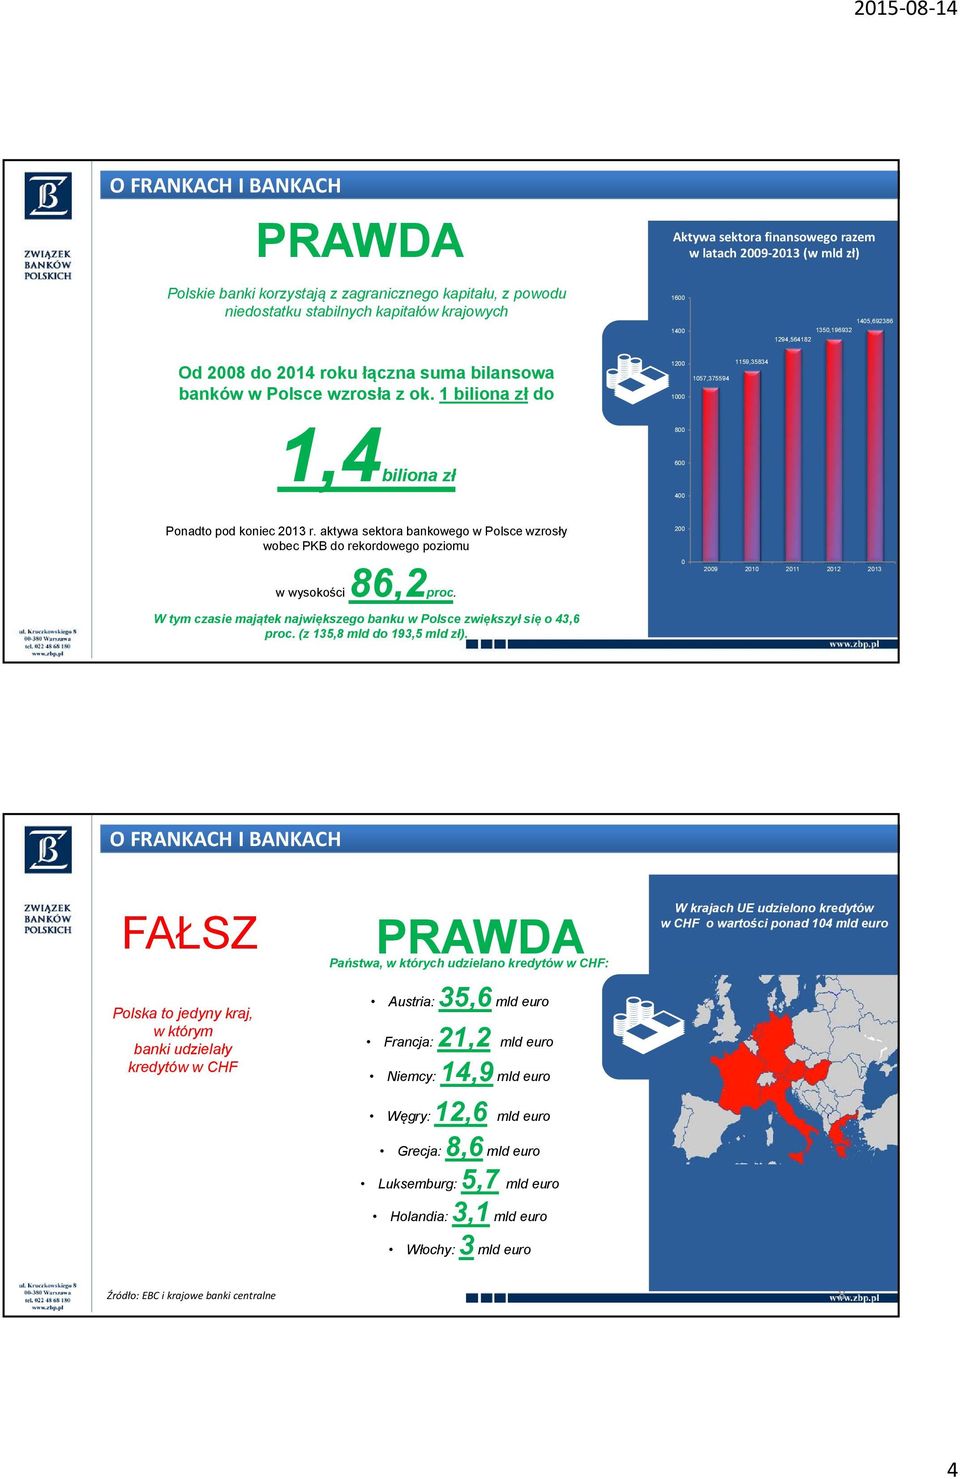 aktywa sektora bankowego w Polsce wzrosły wobec PKB do rekordowego poziomu 200 0 2009 2010 2011 2012 2013 wwysokości 86,2proc.